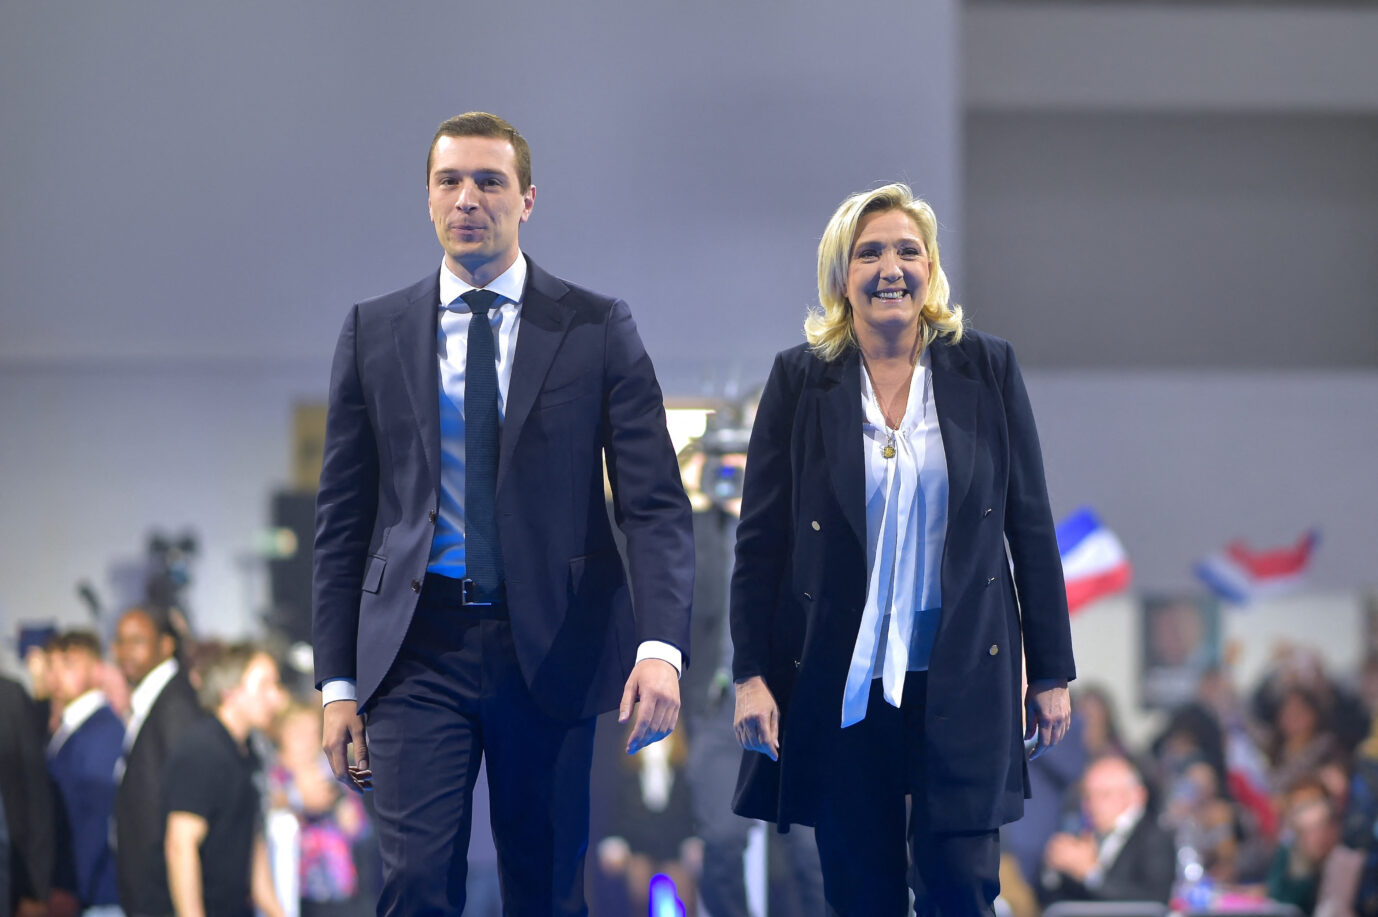 Jordan Bardella und seine politische Mentorin Marine Le Pen: Der neue RN-Chef will die politische Rechte einen.